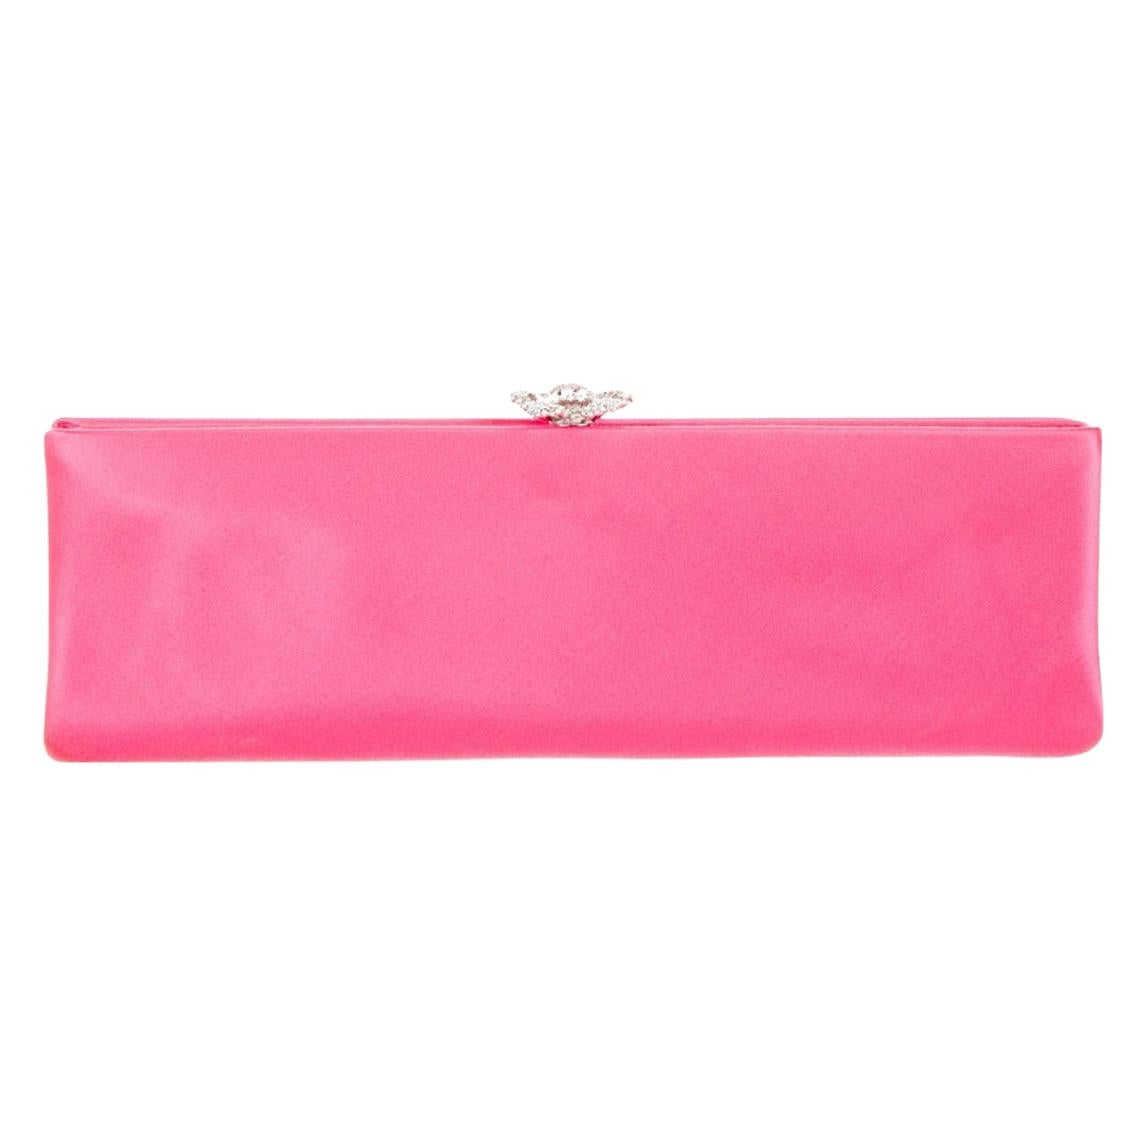 Chanel Pink Satin Silver Crystal Evening Envelope Clutch Bag